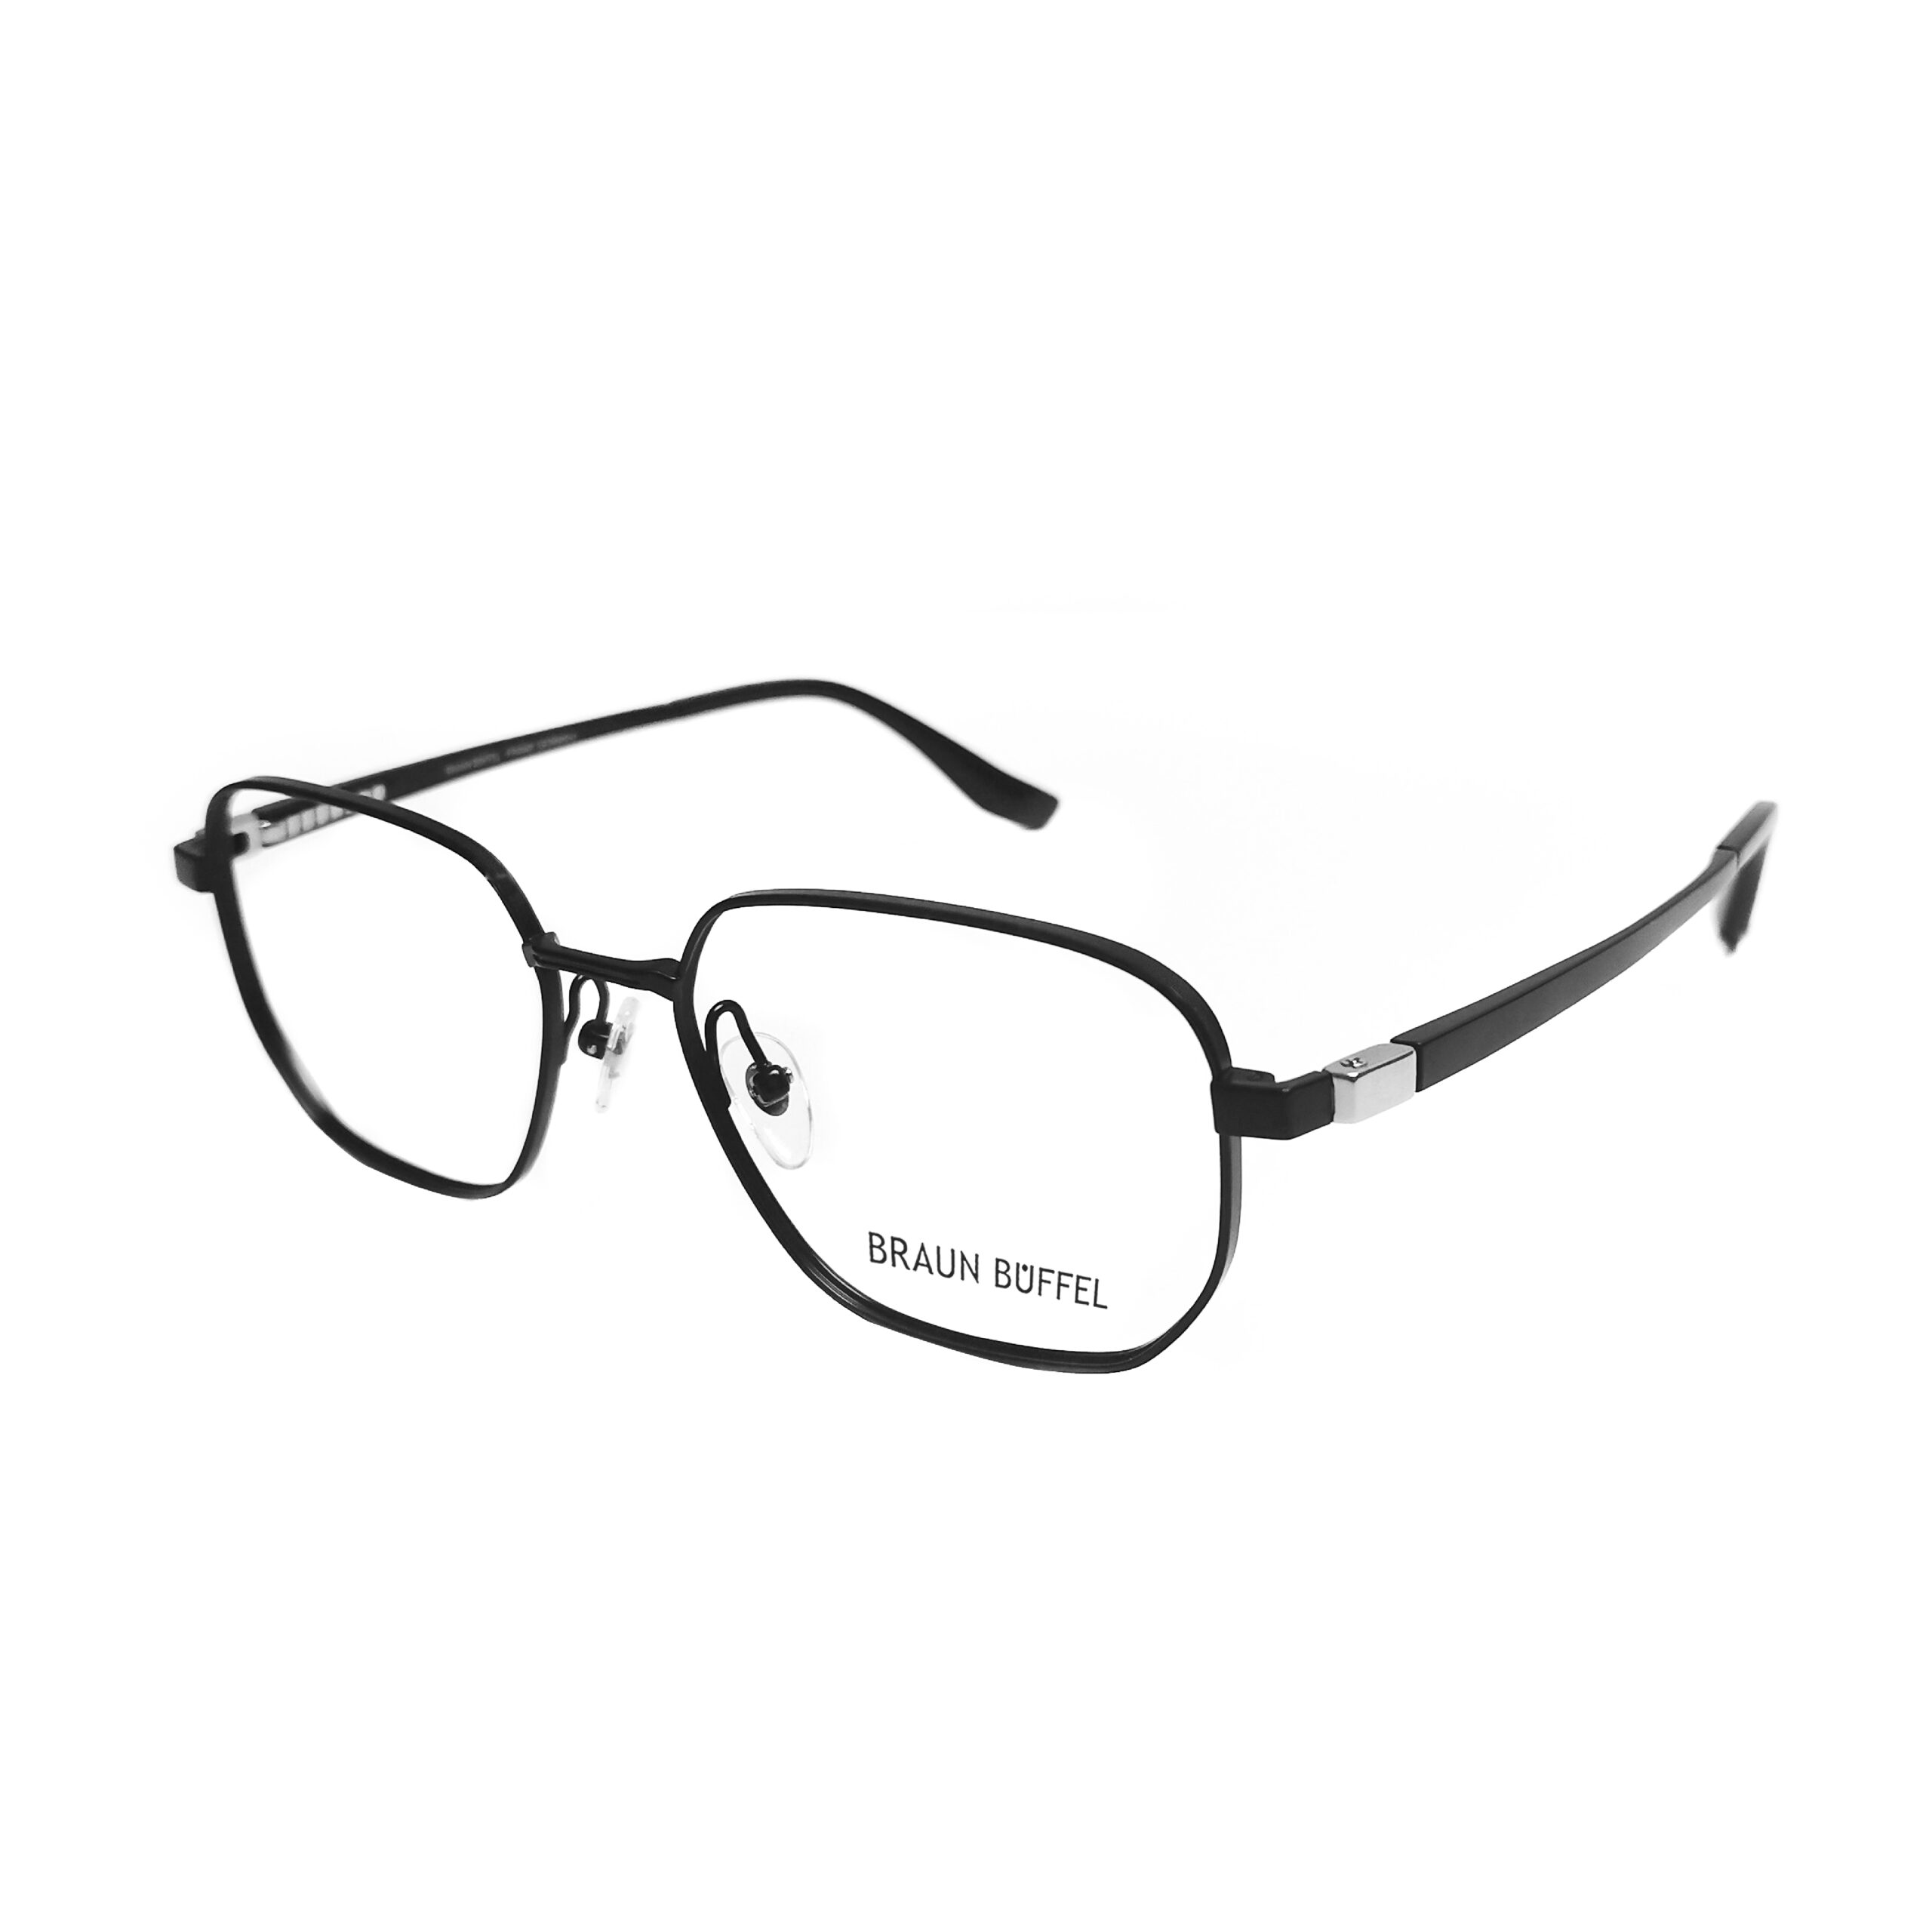 Braun Buffel BB 50007 – C1 – MOG Eyewear – Metro Optical Group